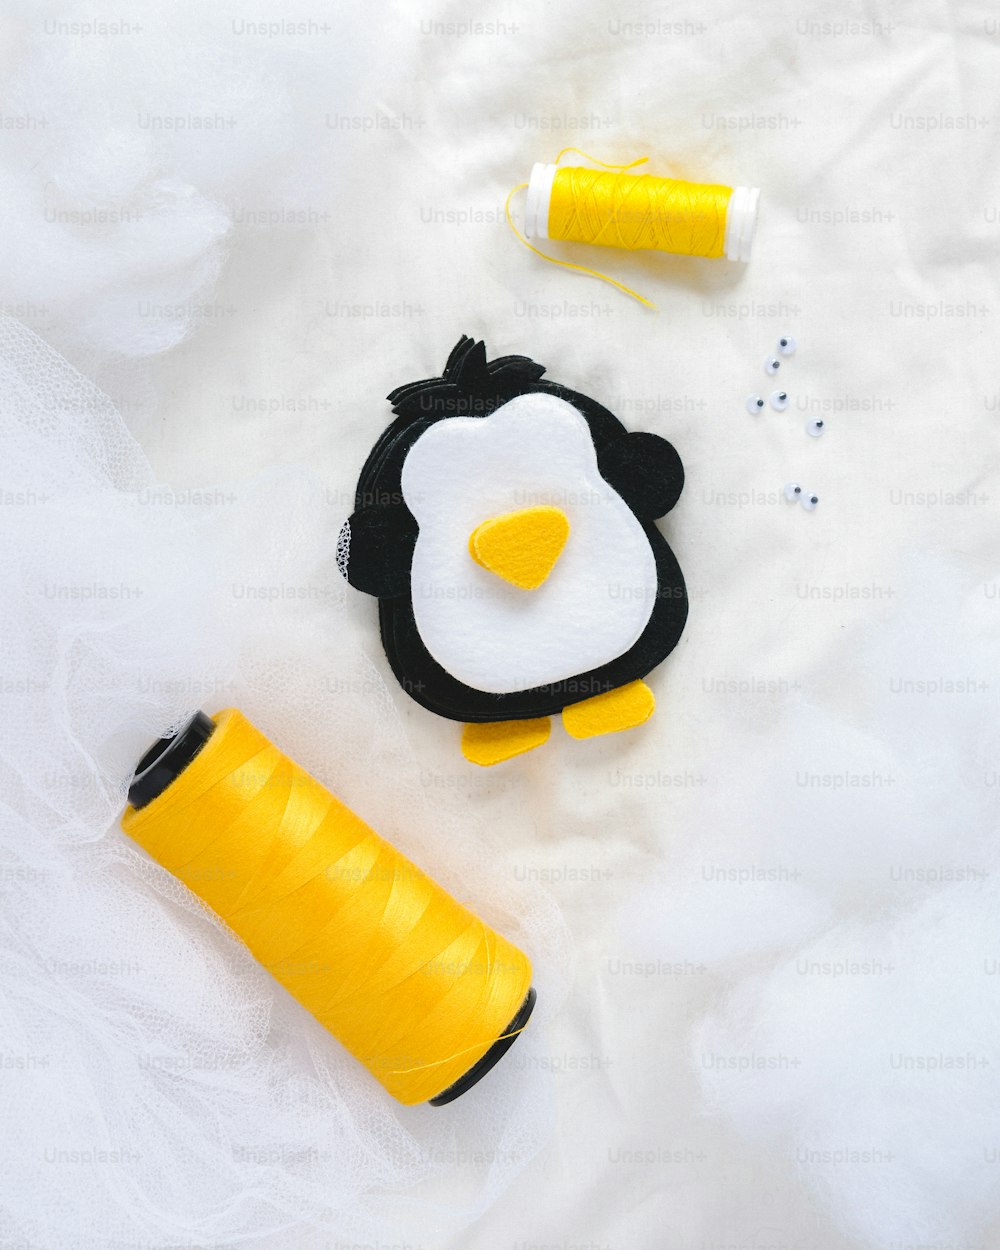 Un proyecto de costura con un pingüino y un carrete de hilo